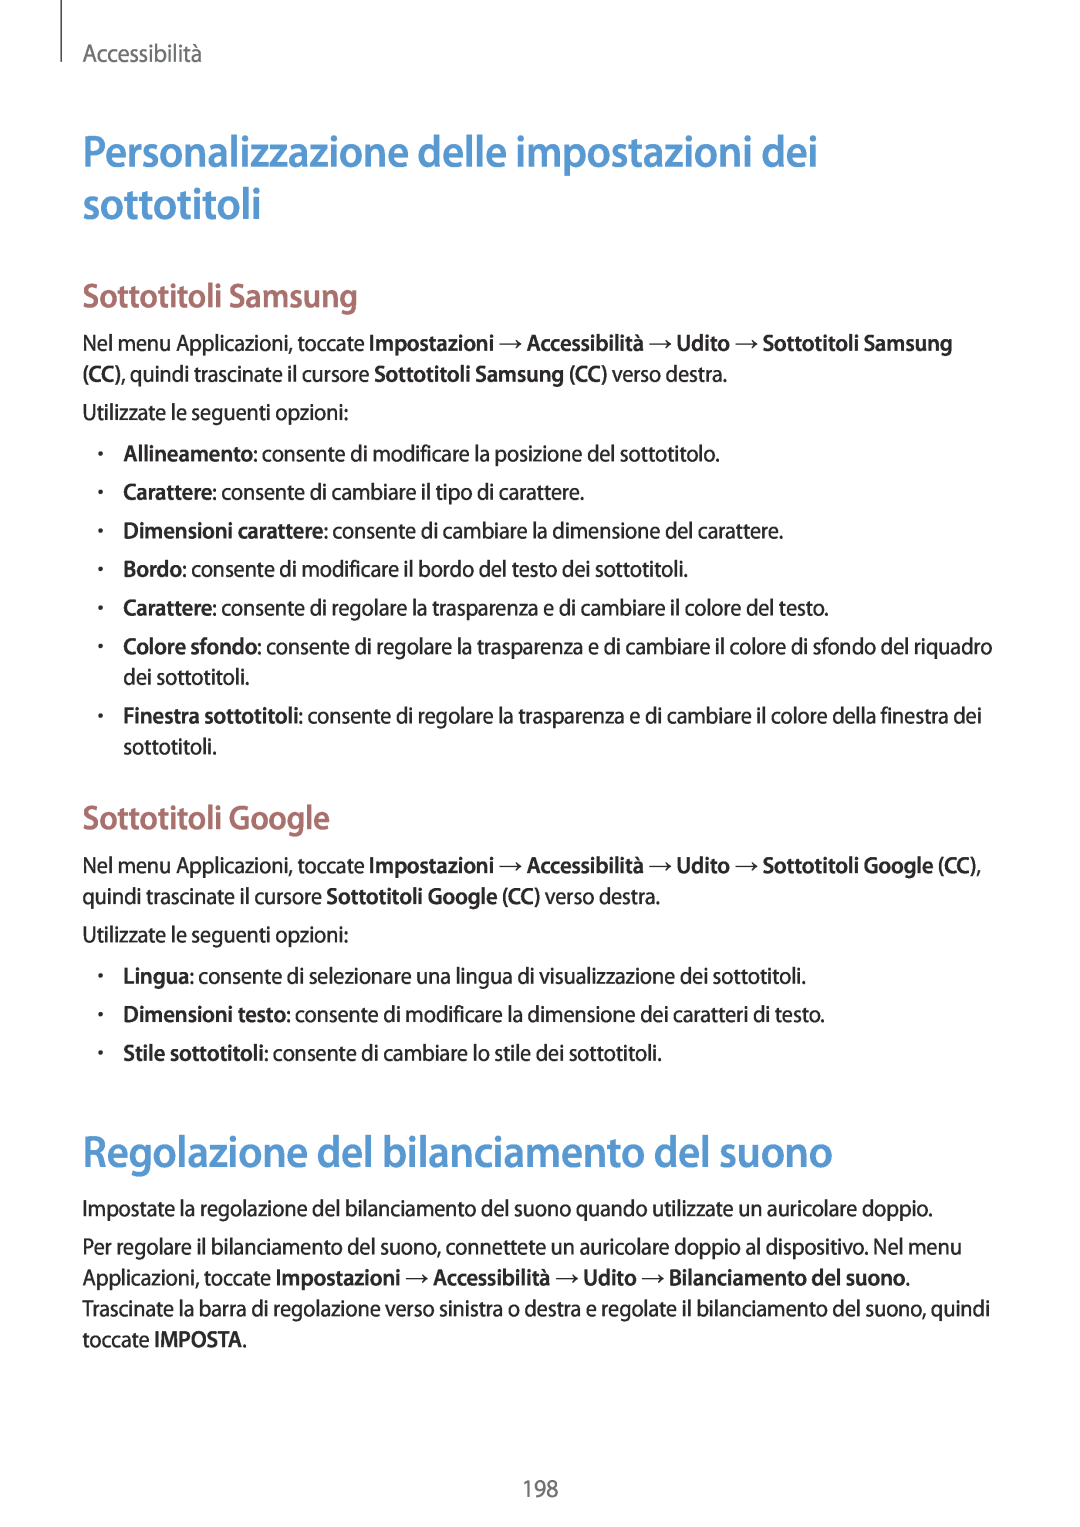 Samsung SM-G900FZKAPHE manual Personalizzazione delle impostazioni dei sottotitoli, Regolazione del bilanciamento del suono 